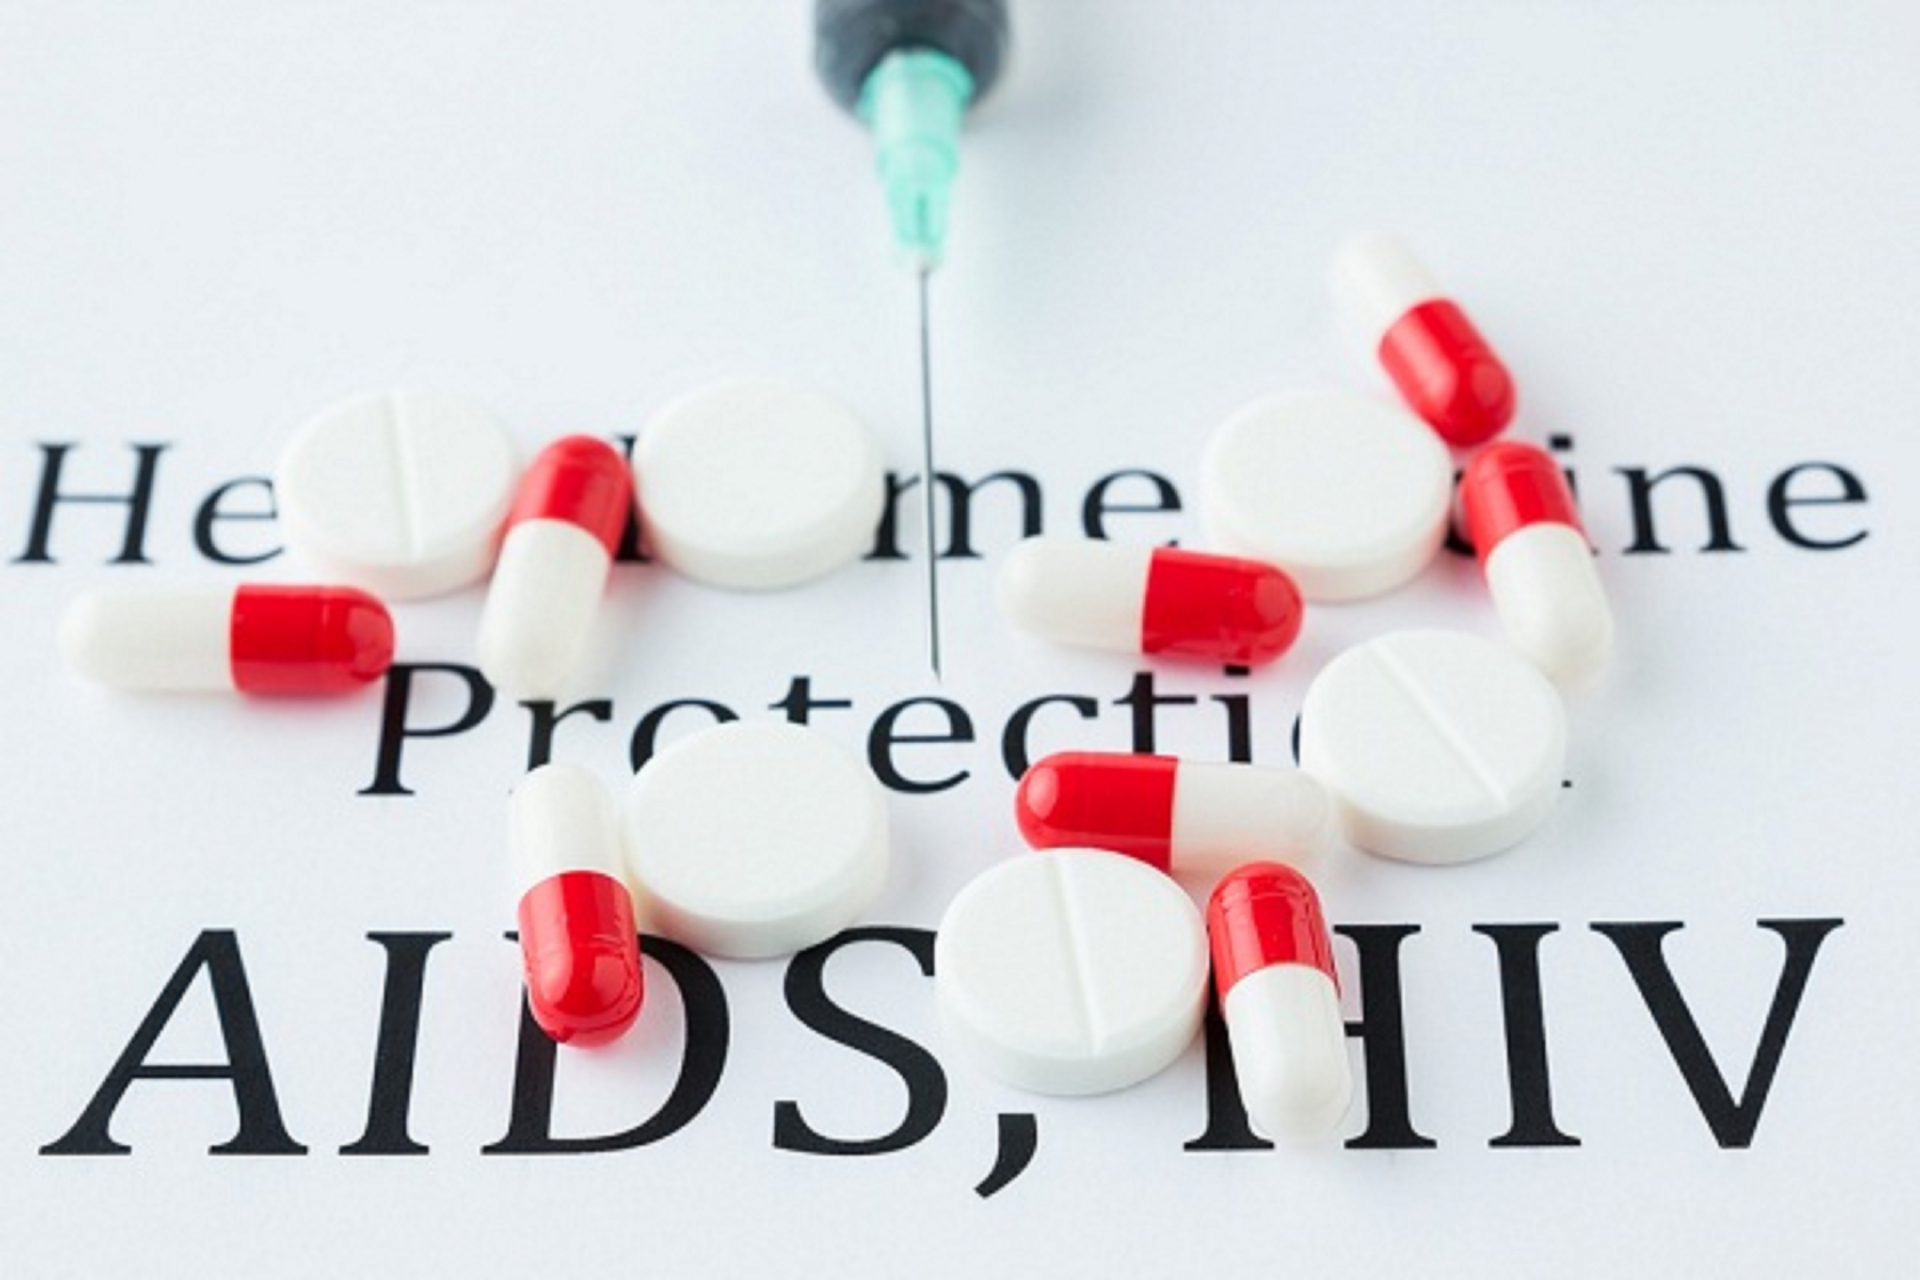 Người nhiễm HIV nếu được điều trị bằng thuốc ARV sớm và tuân thủ điều trị thì vẫn có thể sống khỏe mạnh như người bình thường. Ảnh minh họa